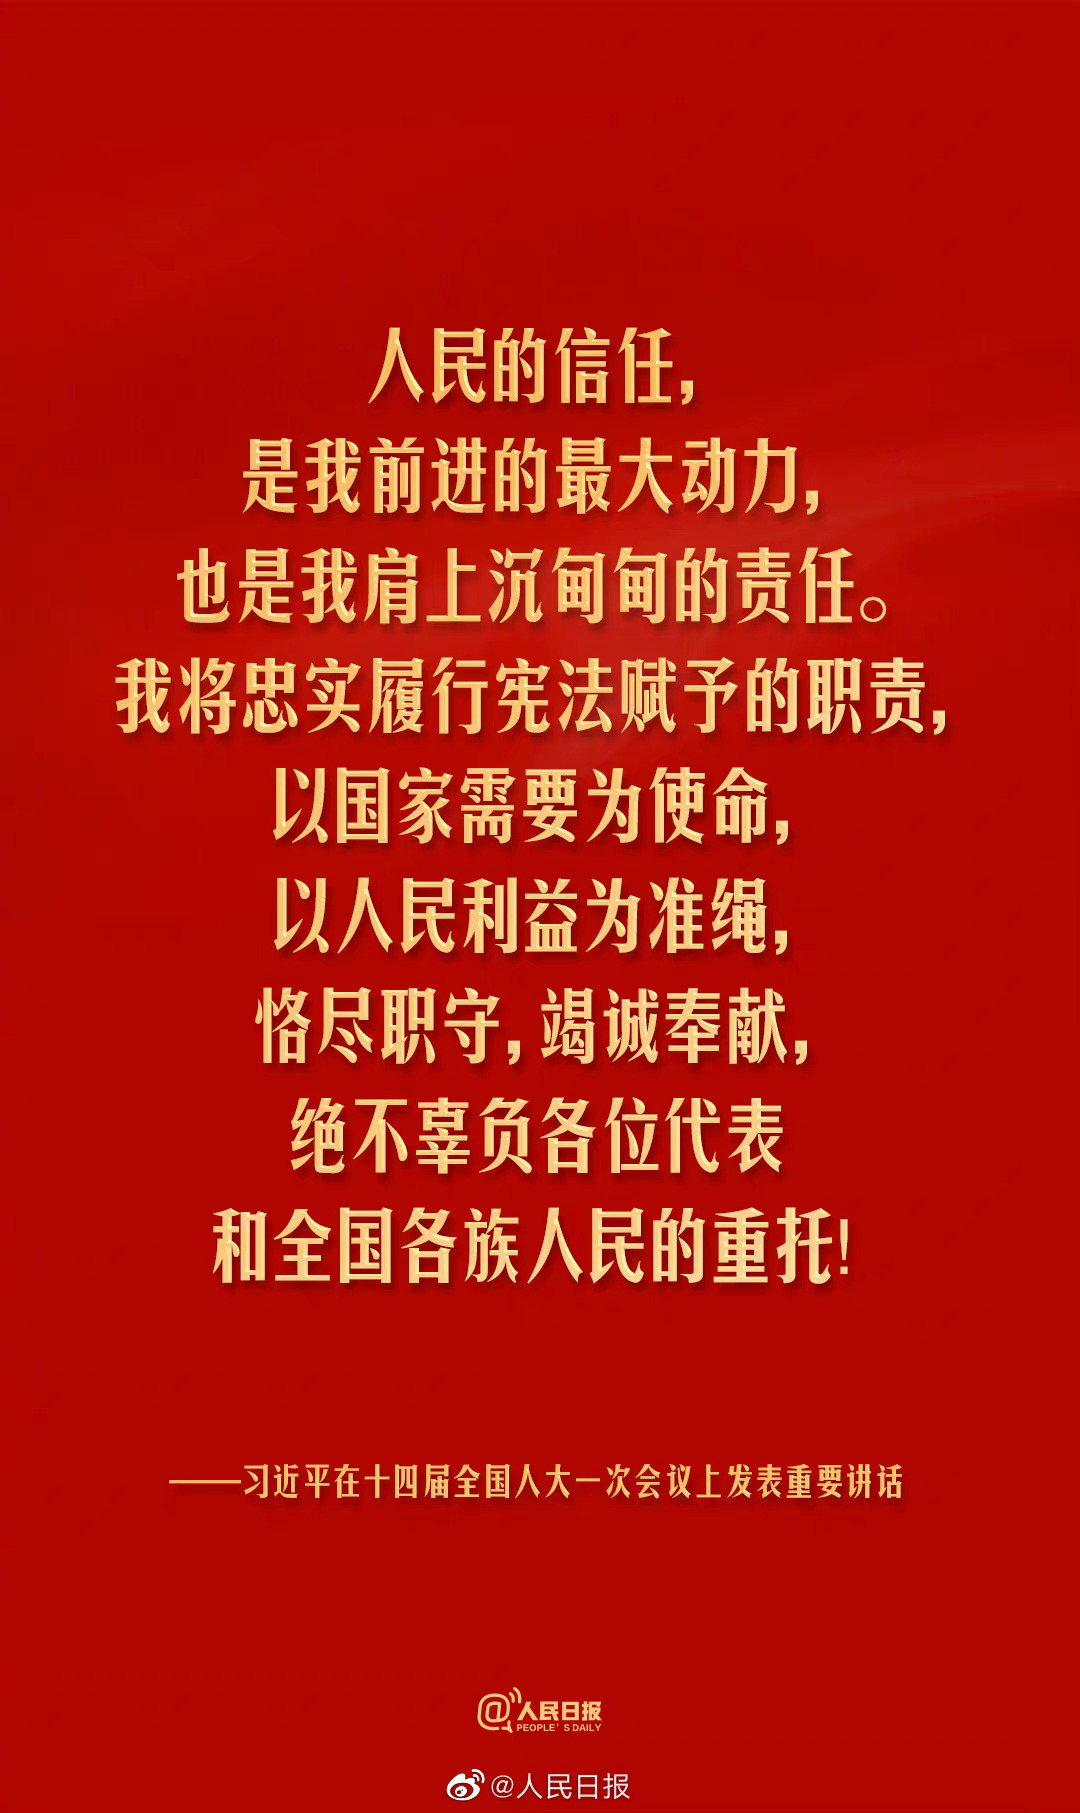 南京大屠杀幸存者实录出版:130位老人泣血控诉|南京大屠杀|日军|侵华日军_新浪新闻